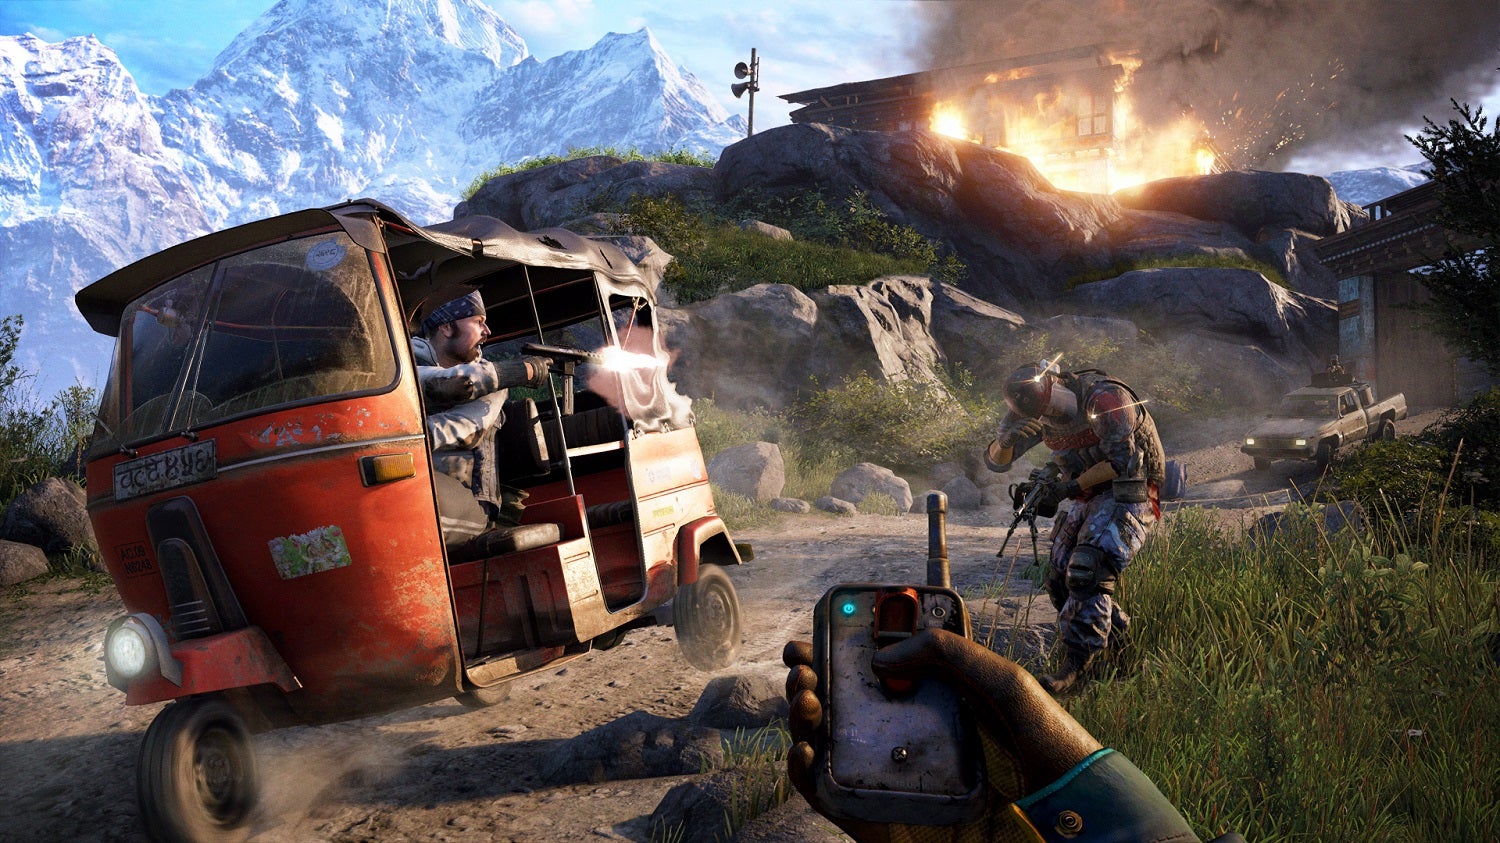 Obrazki dla Brak opcji zmiany kąta widzenia w Far Cry 4 na PC to oznaka pirackiej kopii